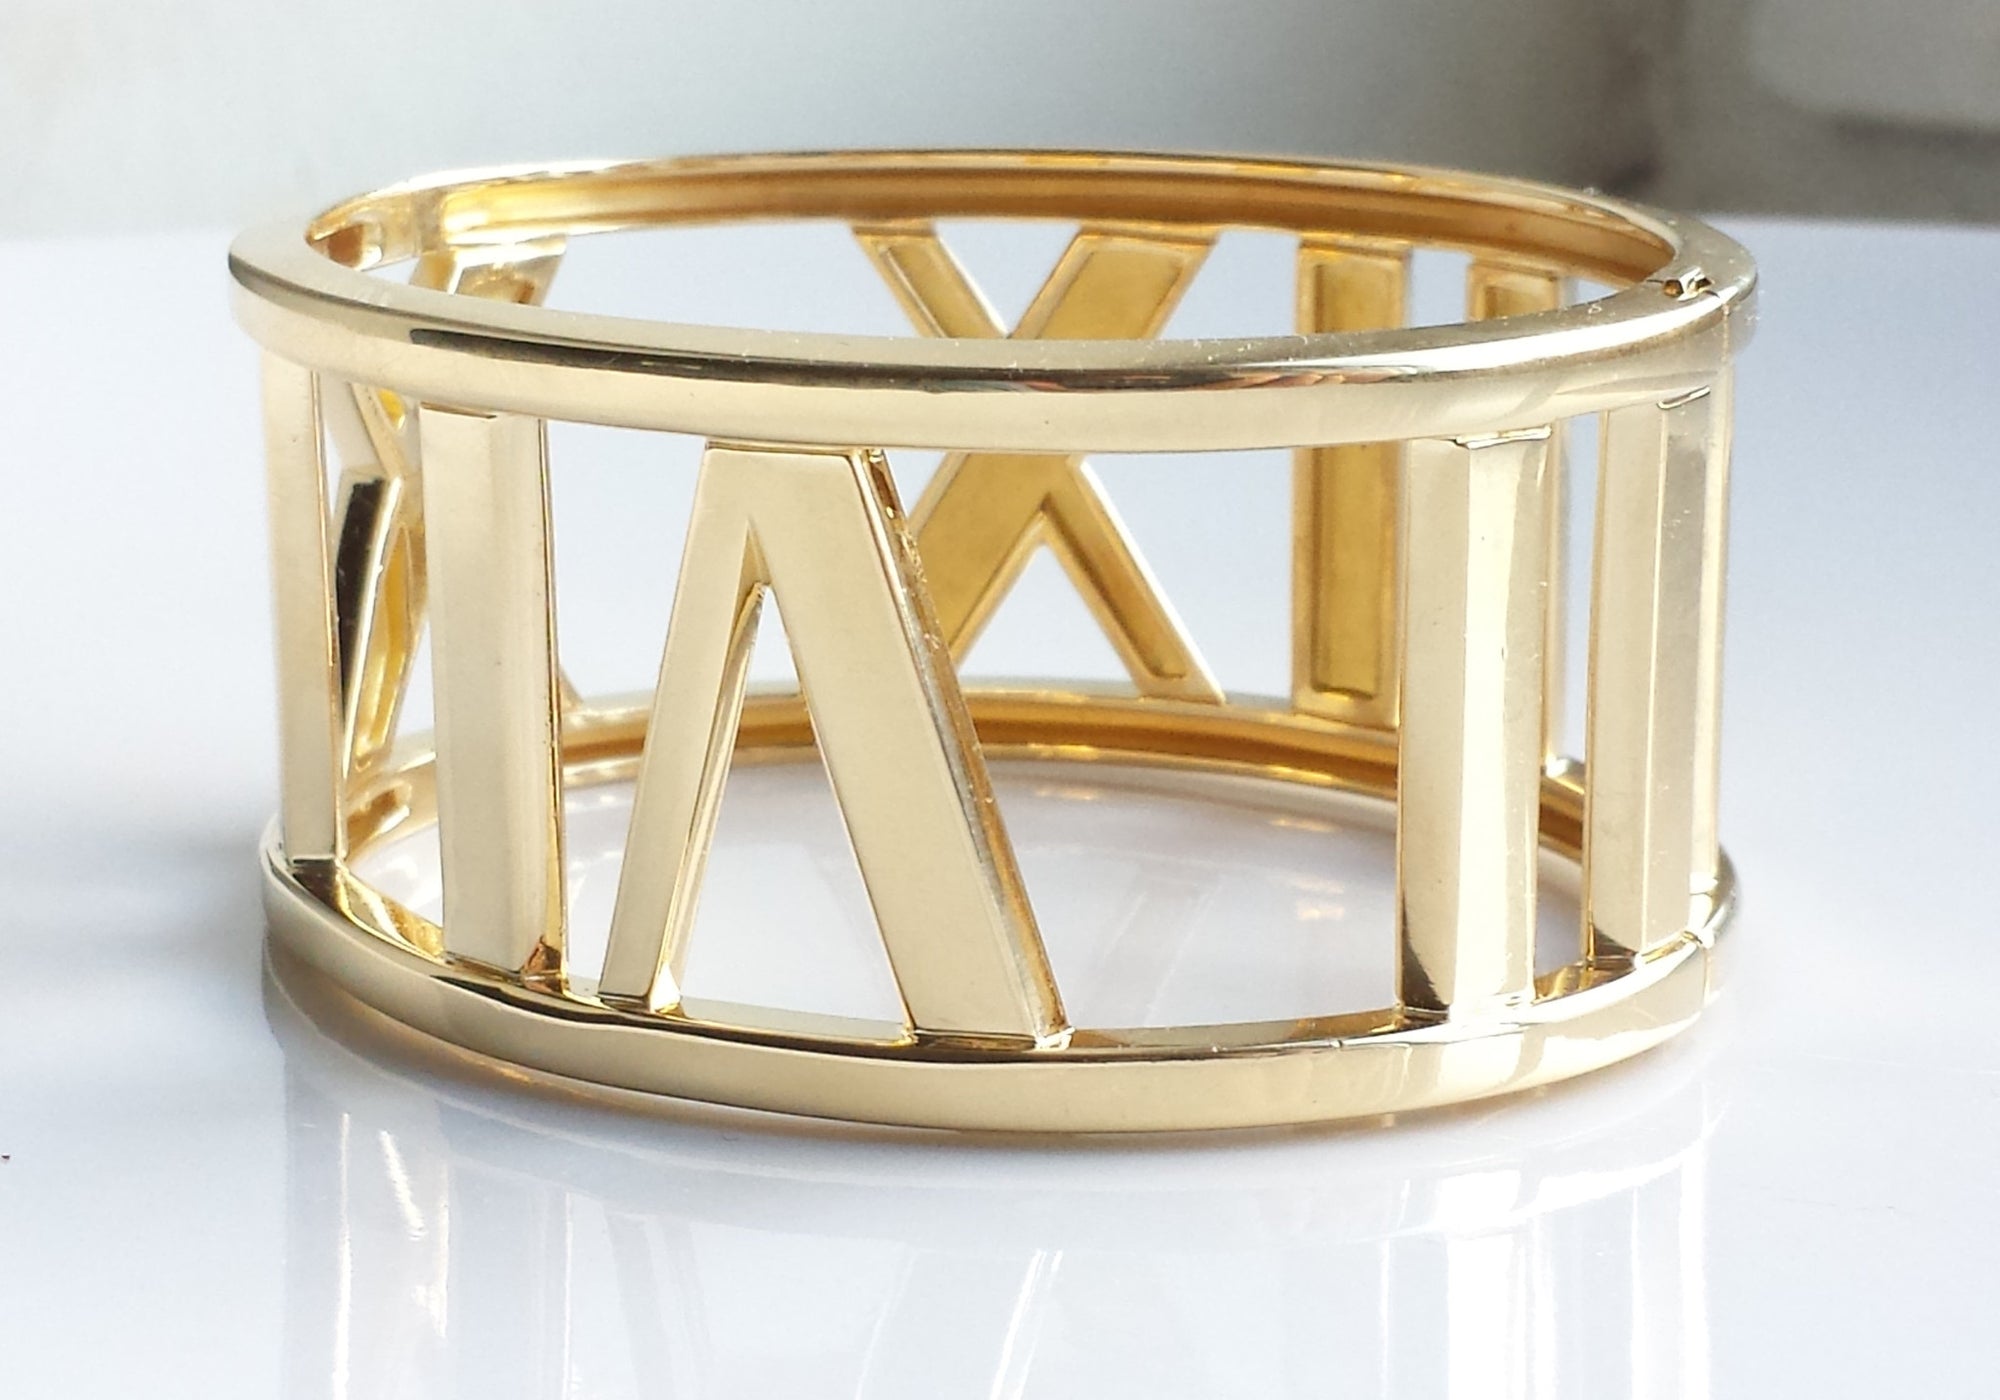 Tiffany & Co. Atlas Wide Bangle / Bracelet in 18k Yellow Gold